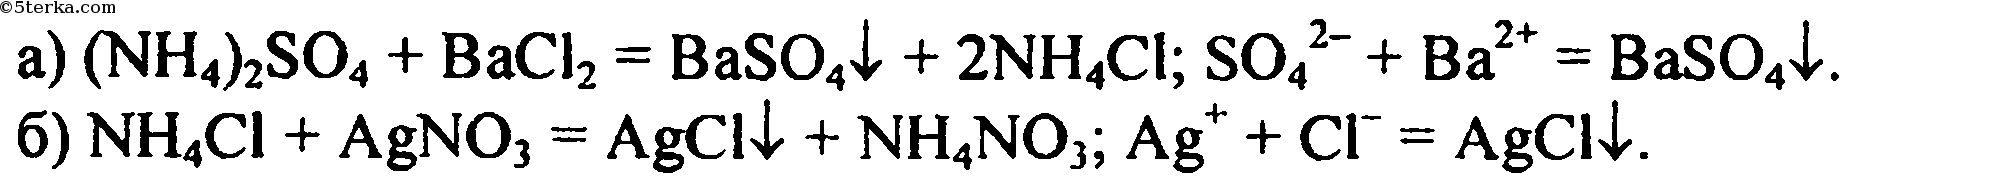 Реакция карбоната калия и нитрата серебра